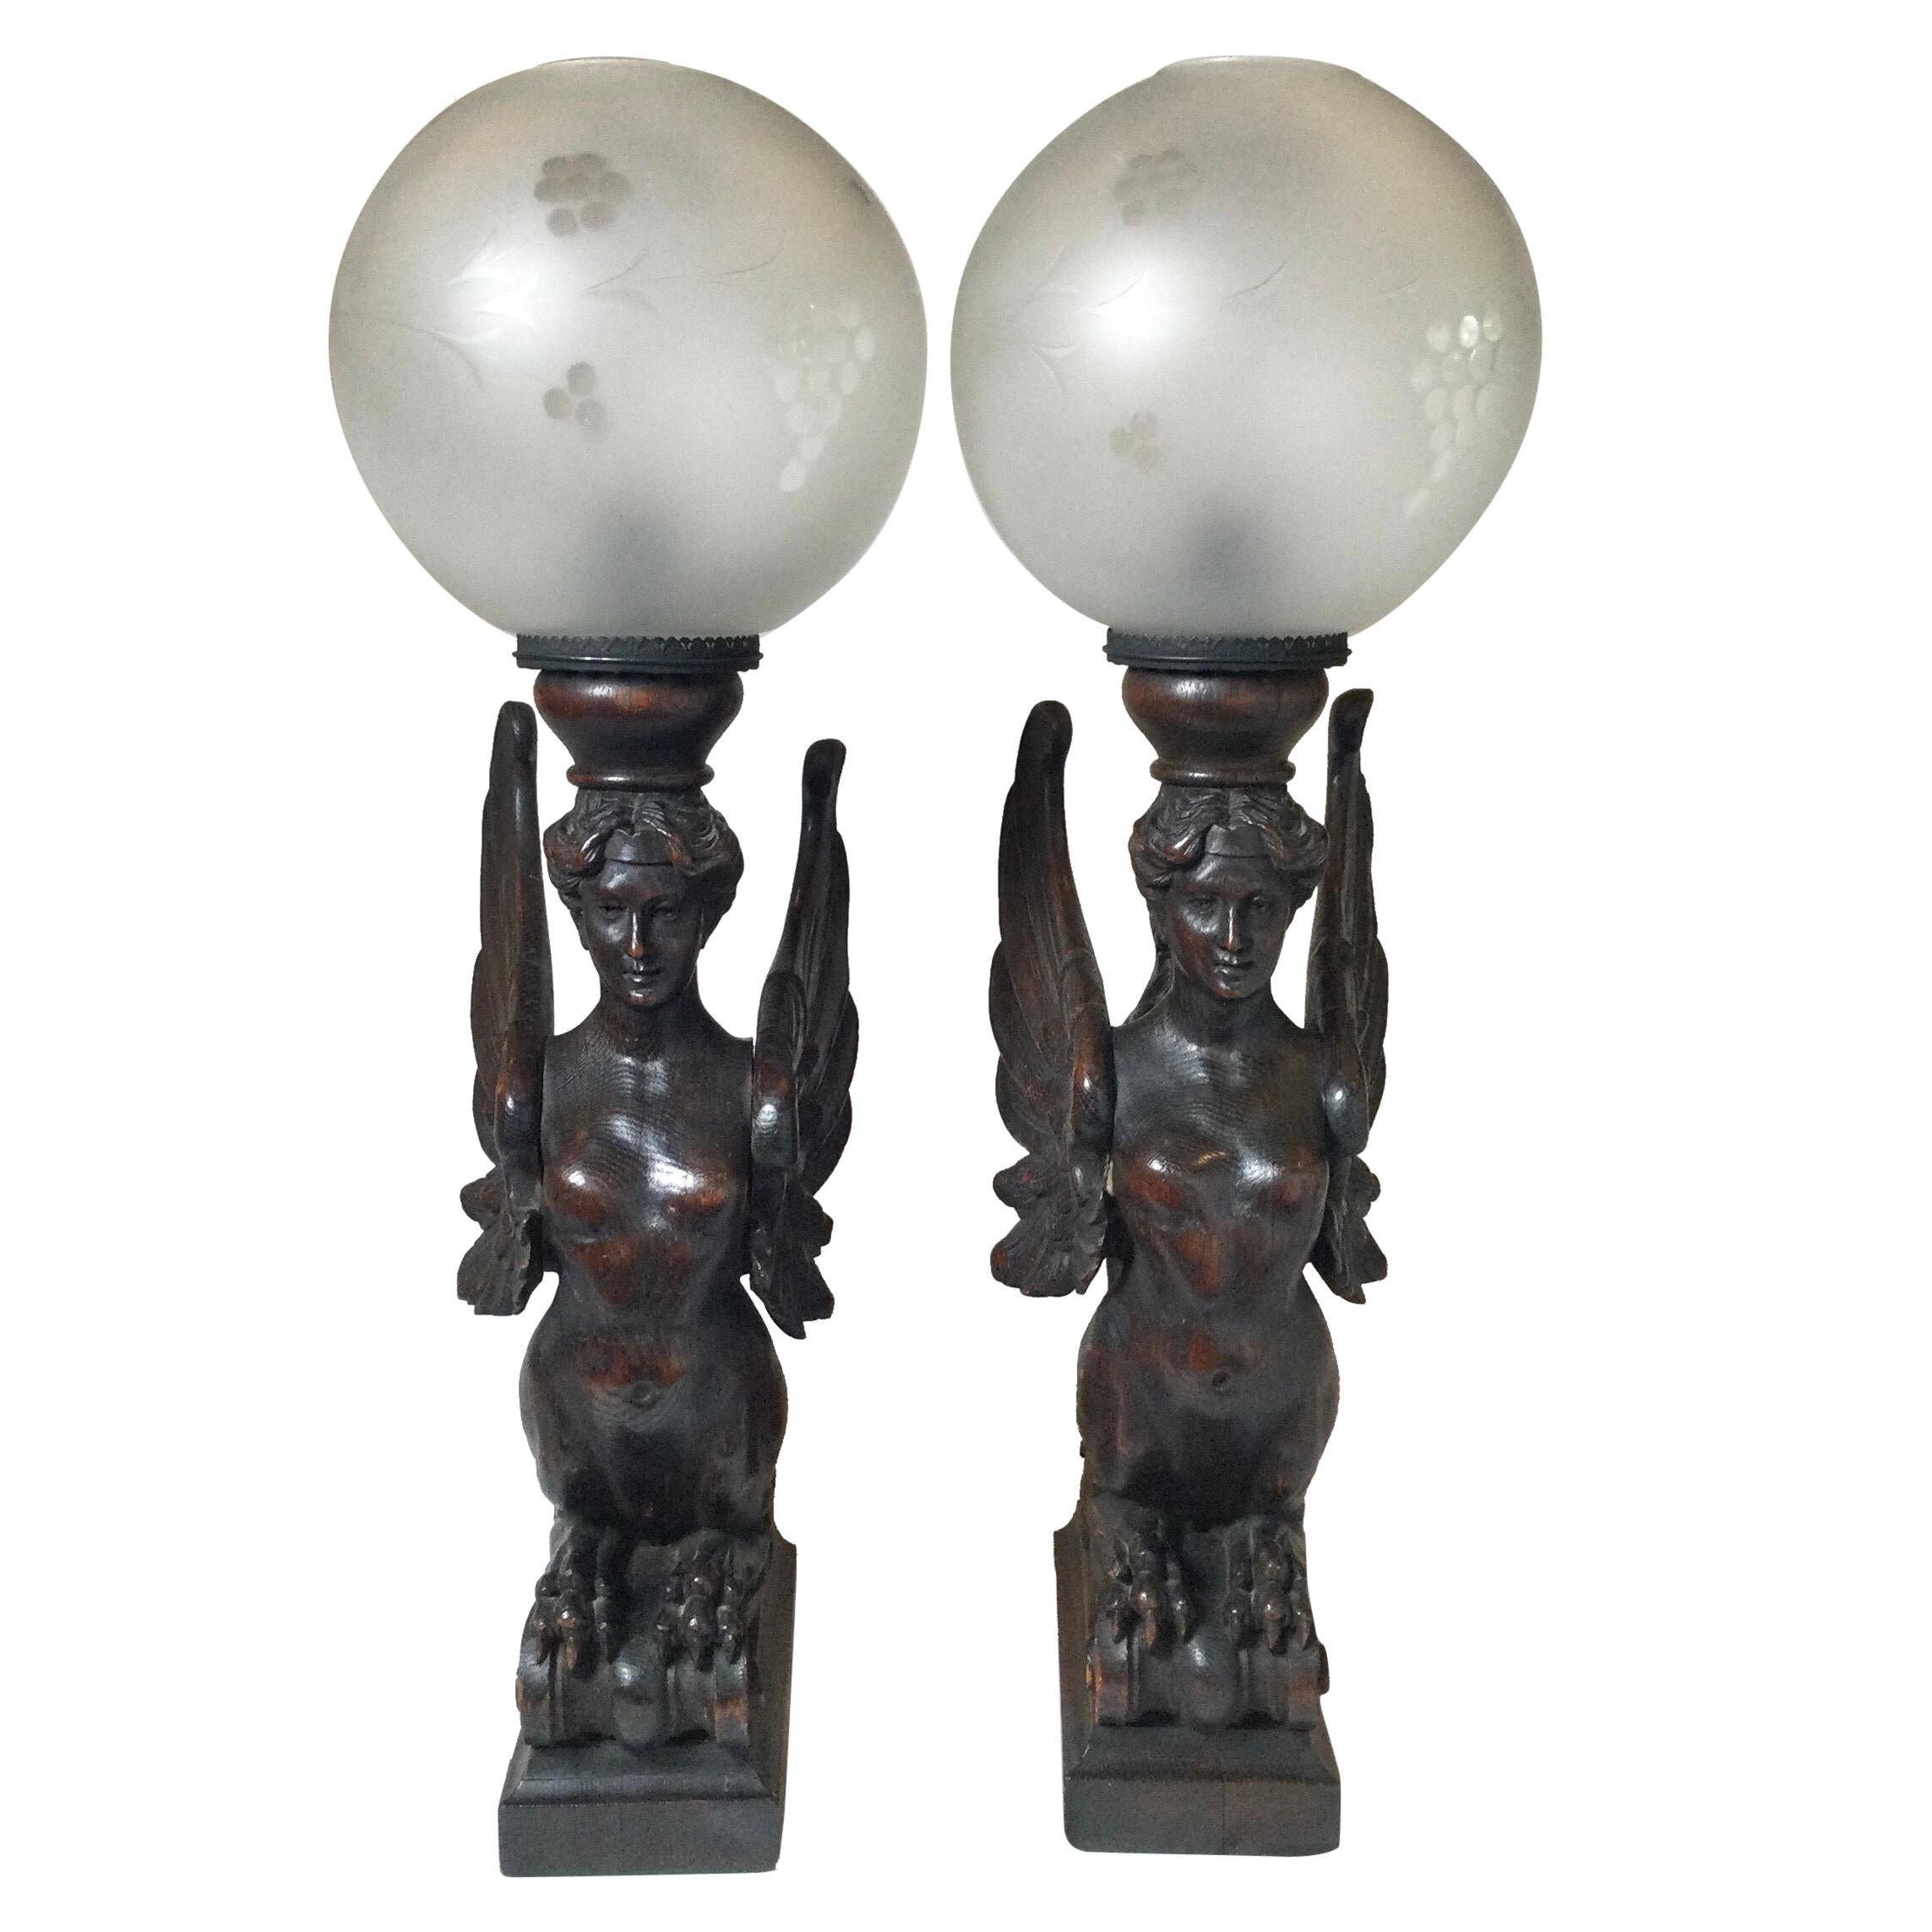 Circa 1880, Paar große handgeschnitzte, geflügelte Caryatids-Griffins aus Holz, jetzt als Lampen